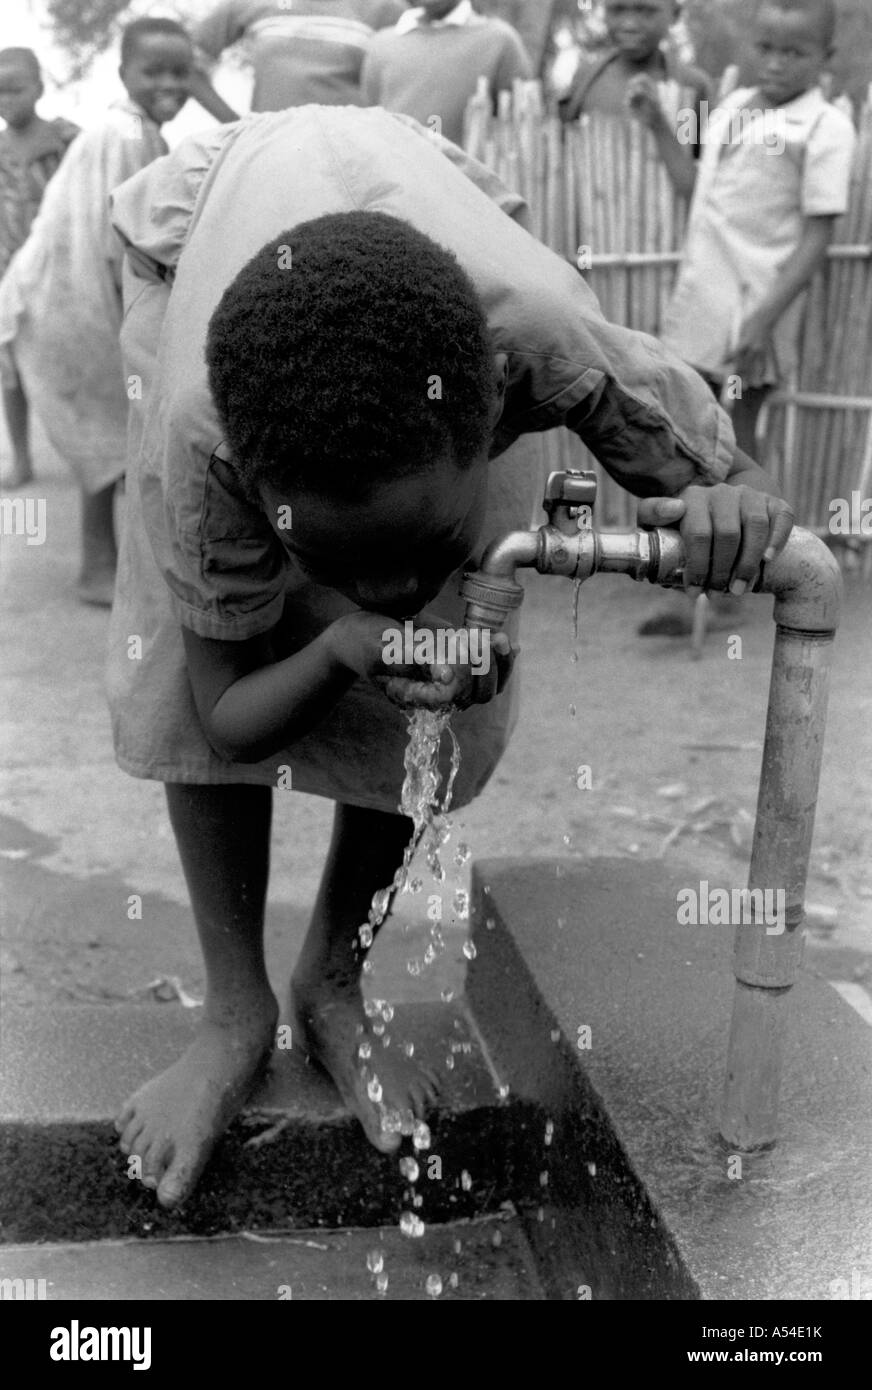 Painet hn1968 563 schwarzen und weißen Jungen trinken Wasserdorf Auslauf Ruanda Land sich entwickelnde Nation weniger wirtschaftlich Stockfoto